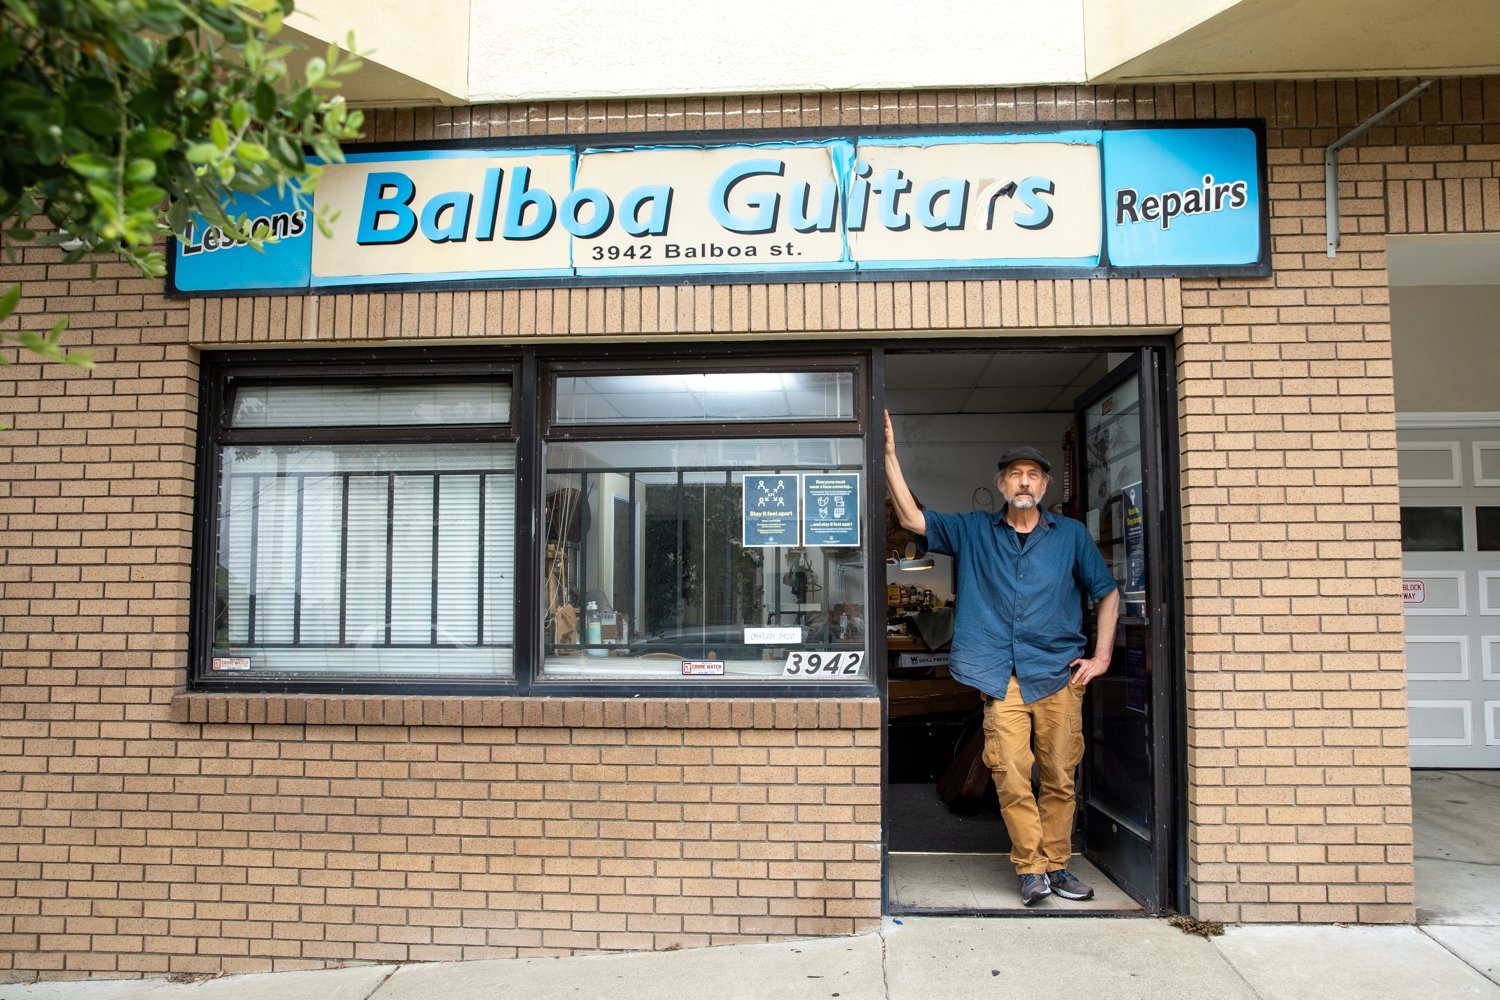 Balboa Guitars